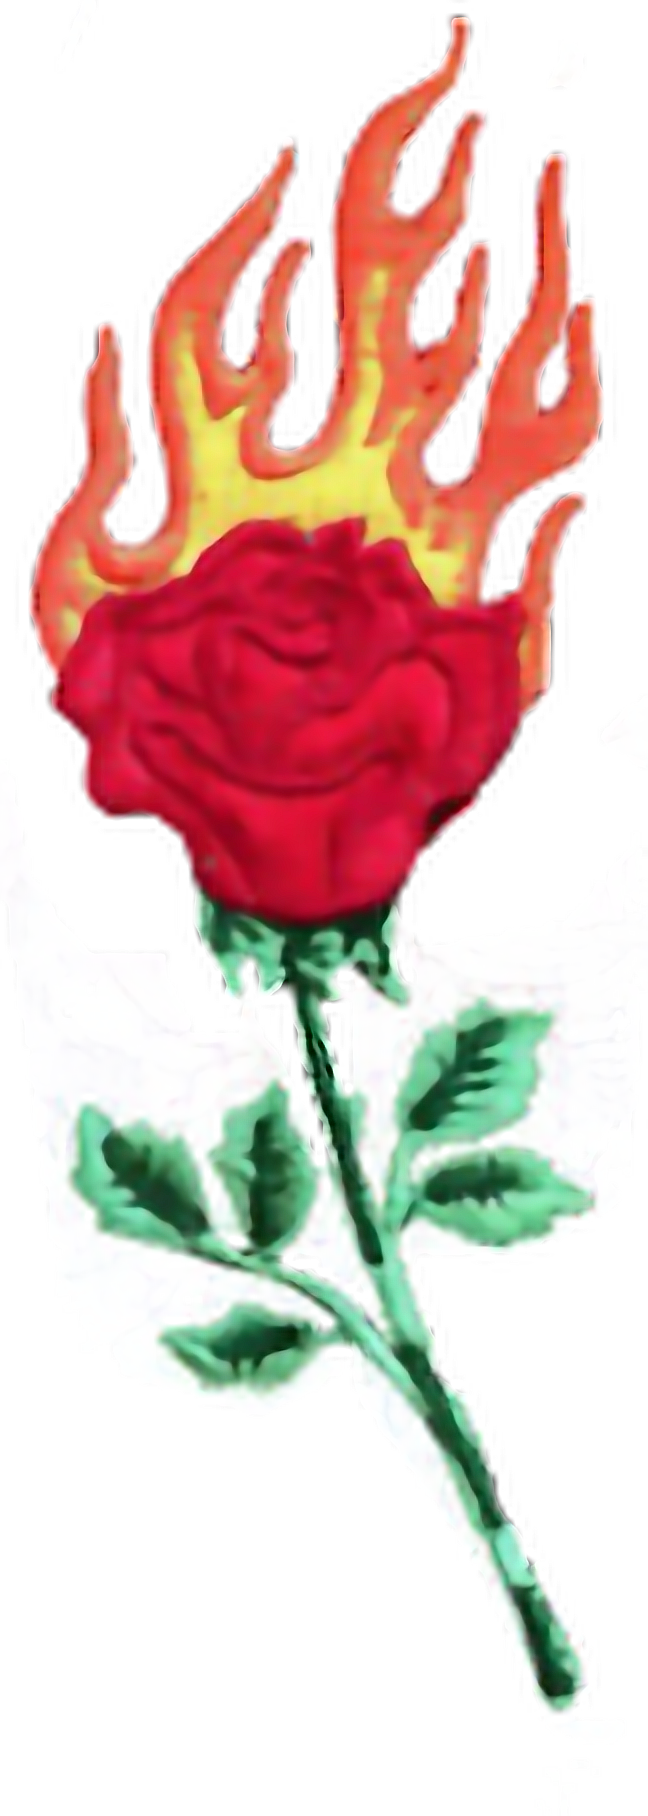 Роза огонь фото